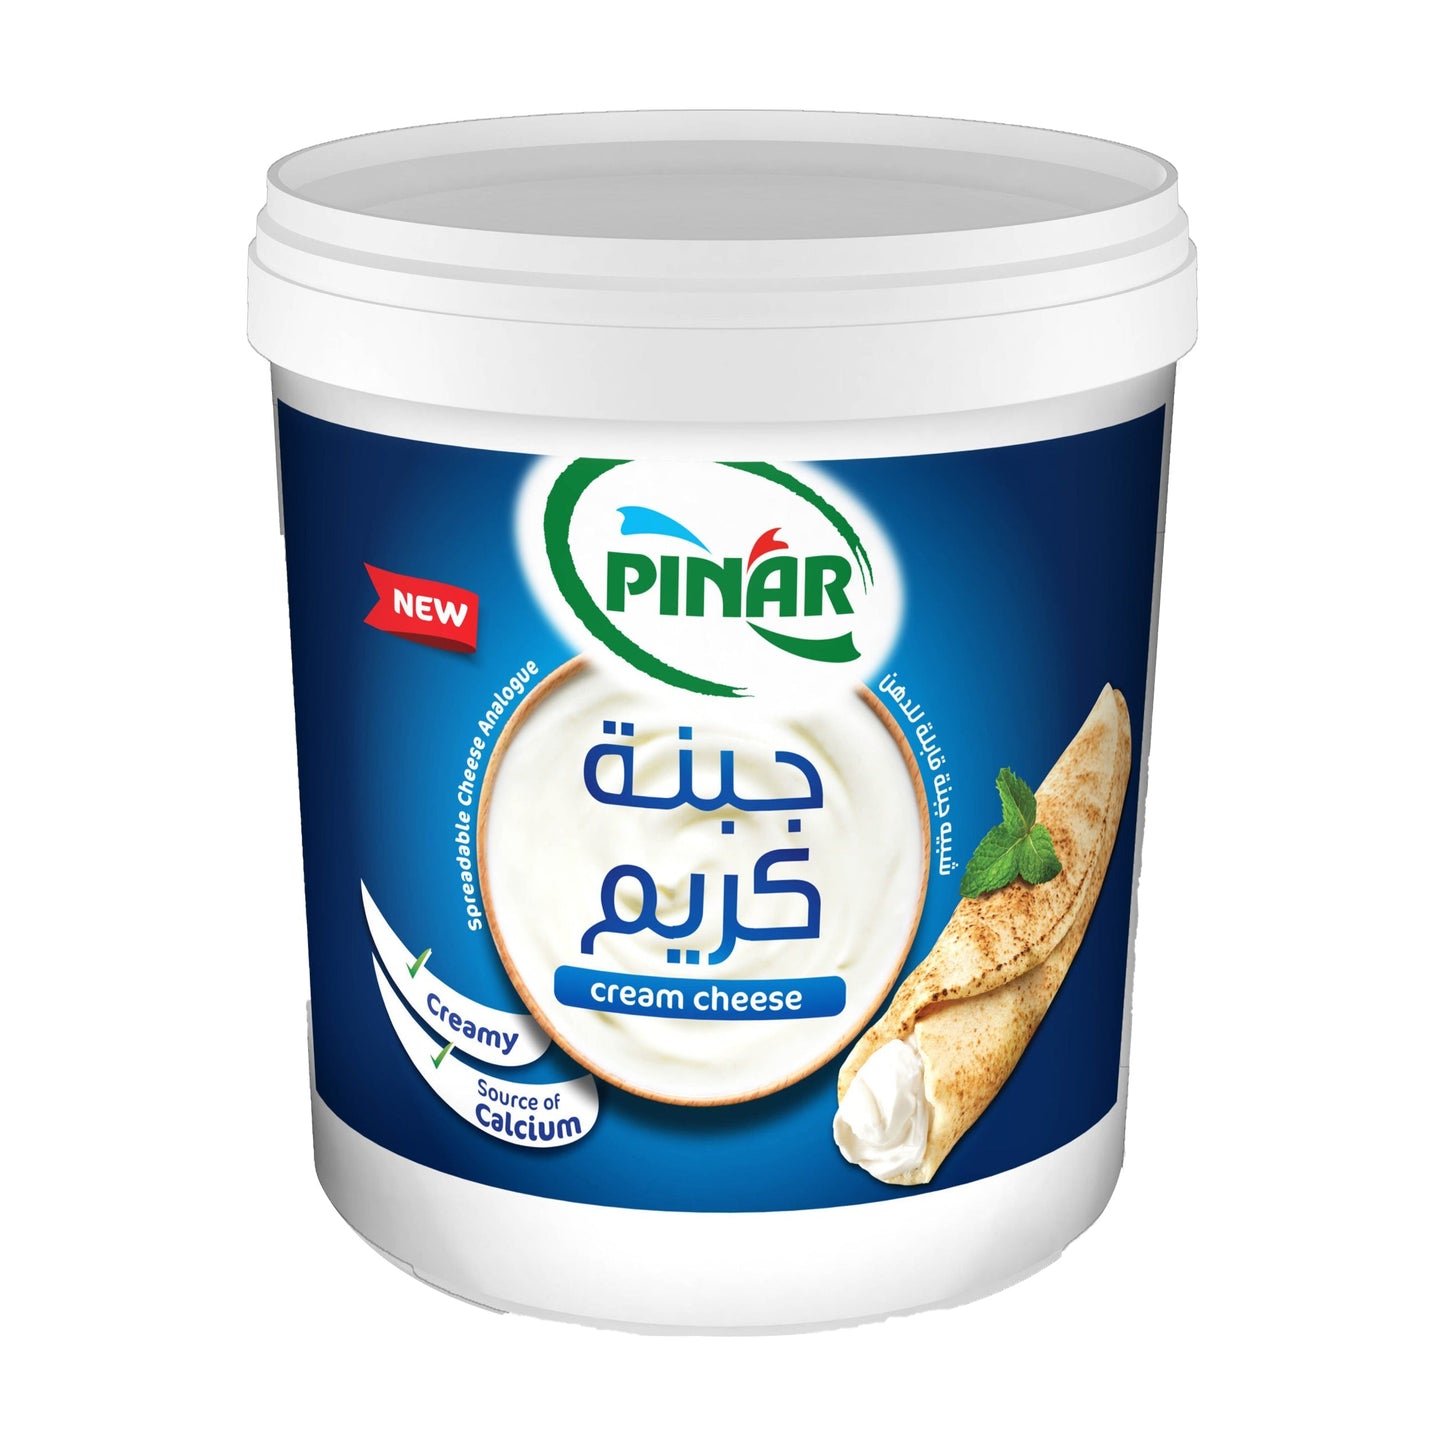 Pinar Cream Cheese Spread 1kg Bucket